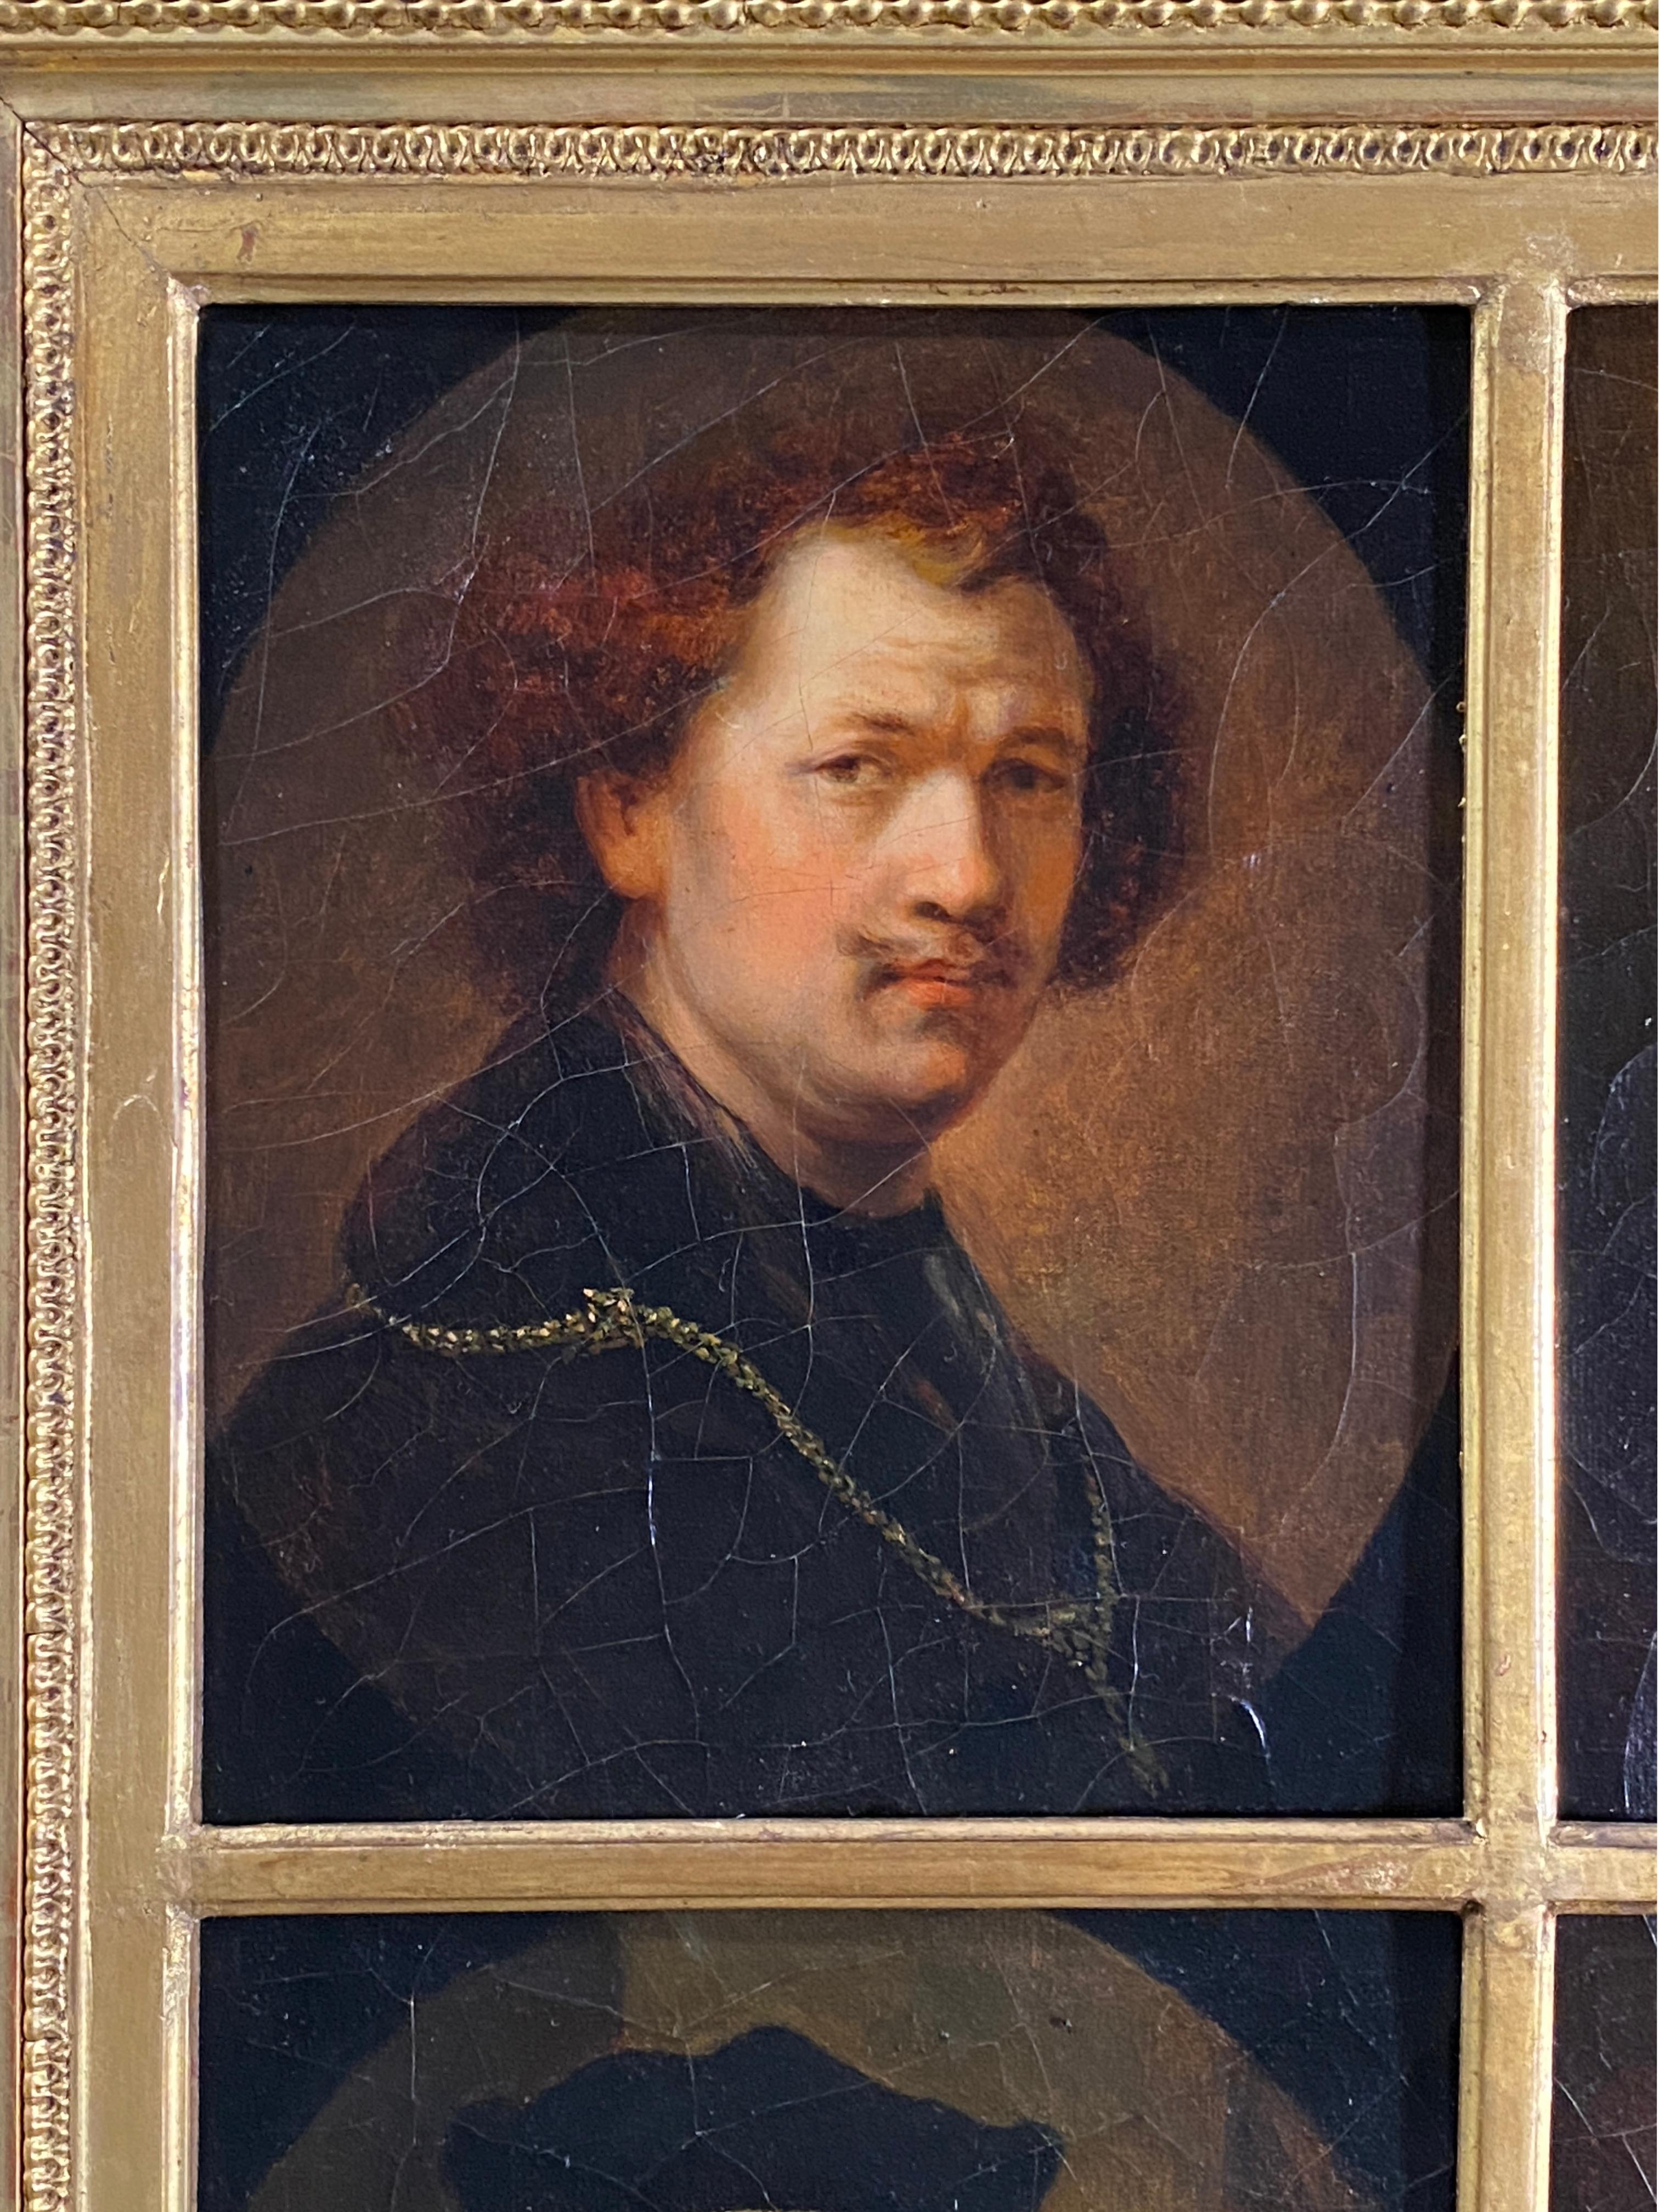 Rembrandt van Rijn (After), Four Portraits and Self Portraits - Brown Portrait Painting by (After) Rembrandt van Rijn 